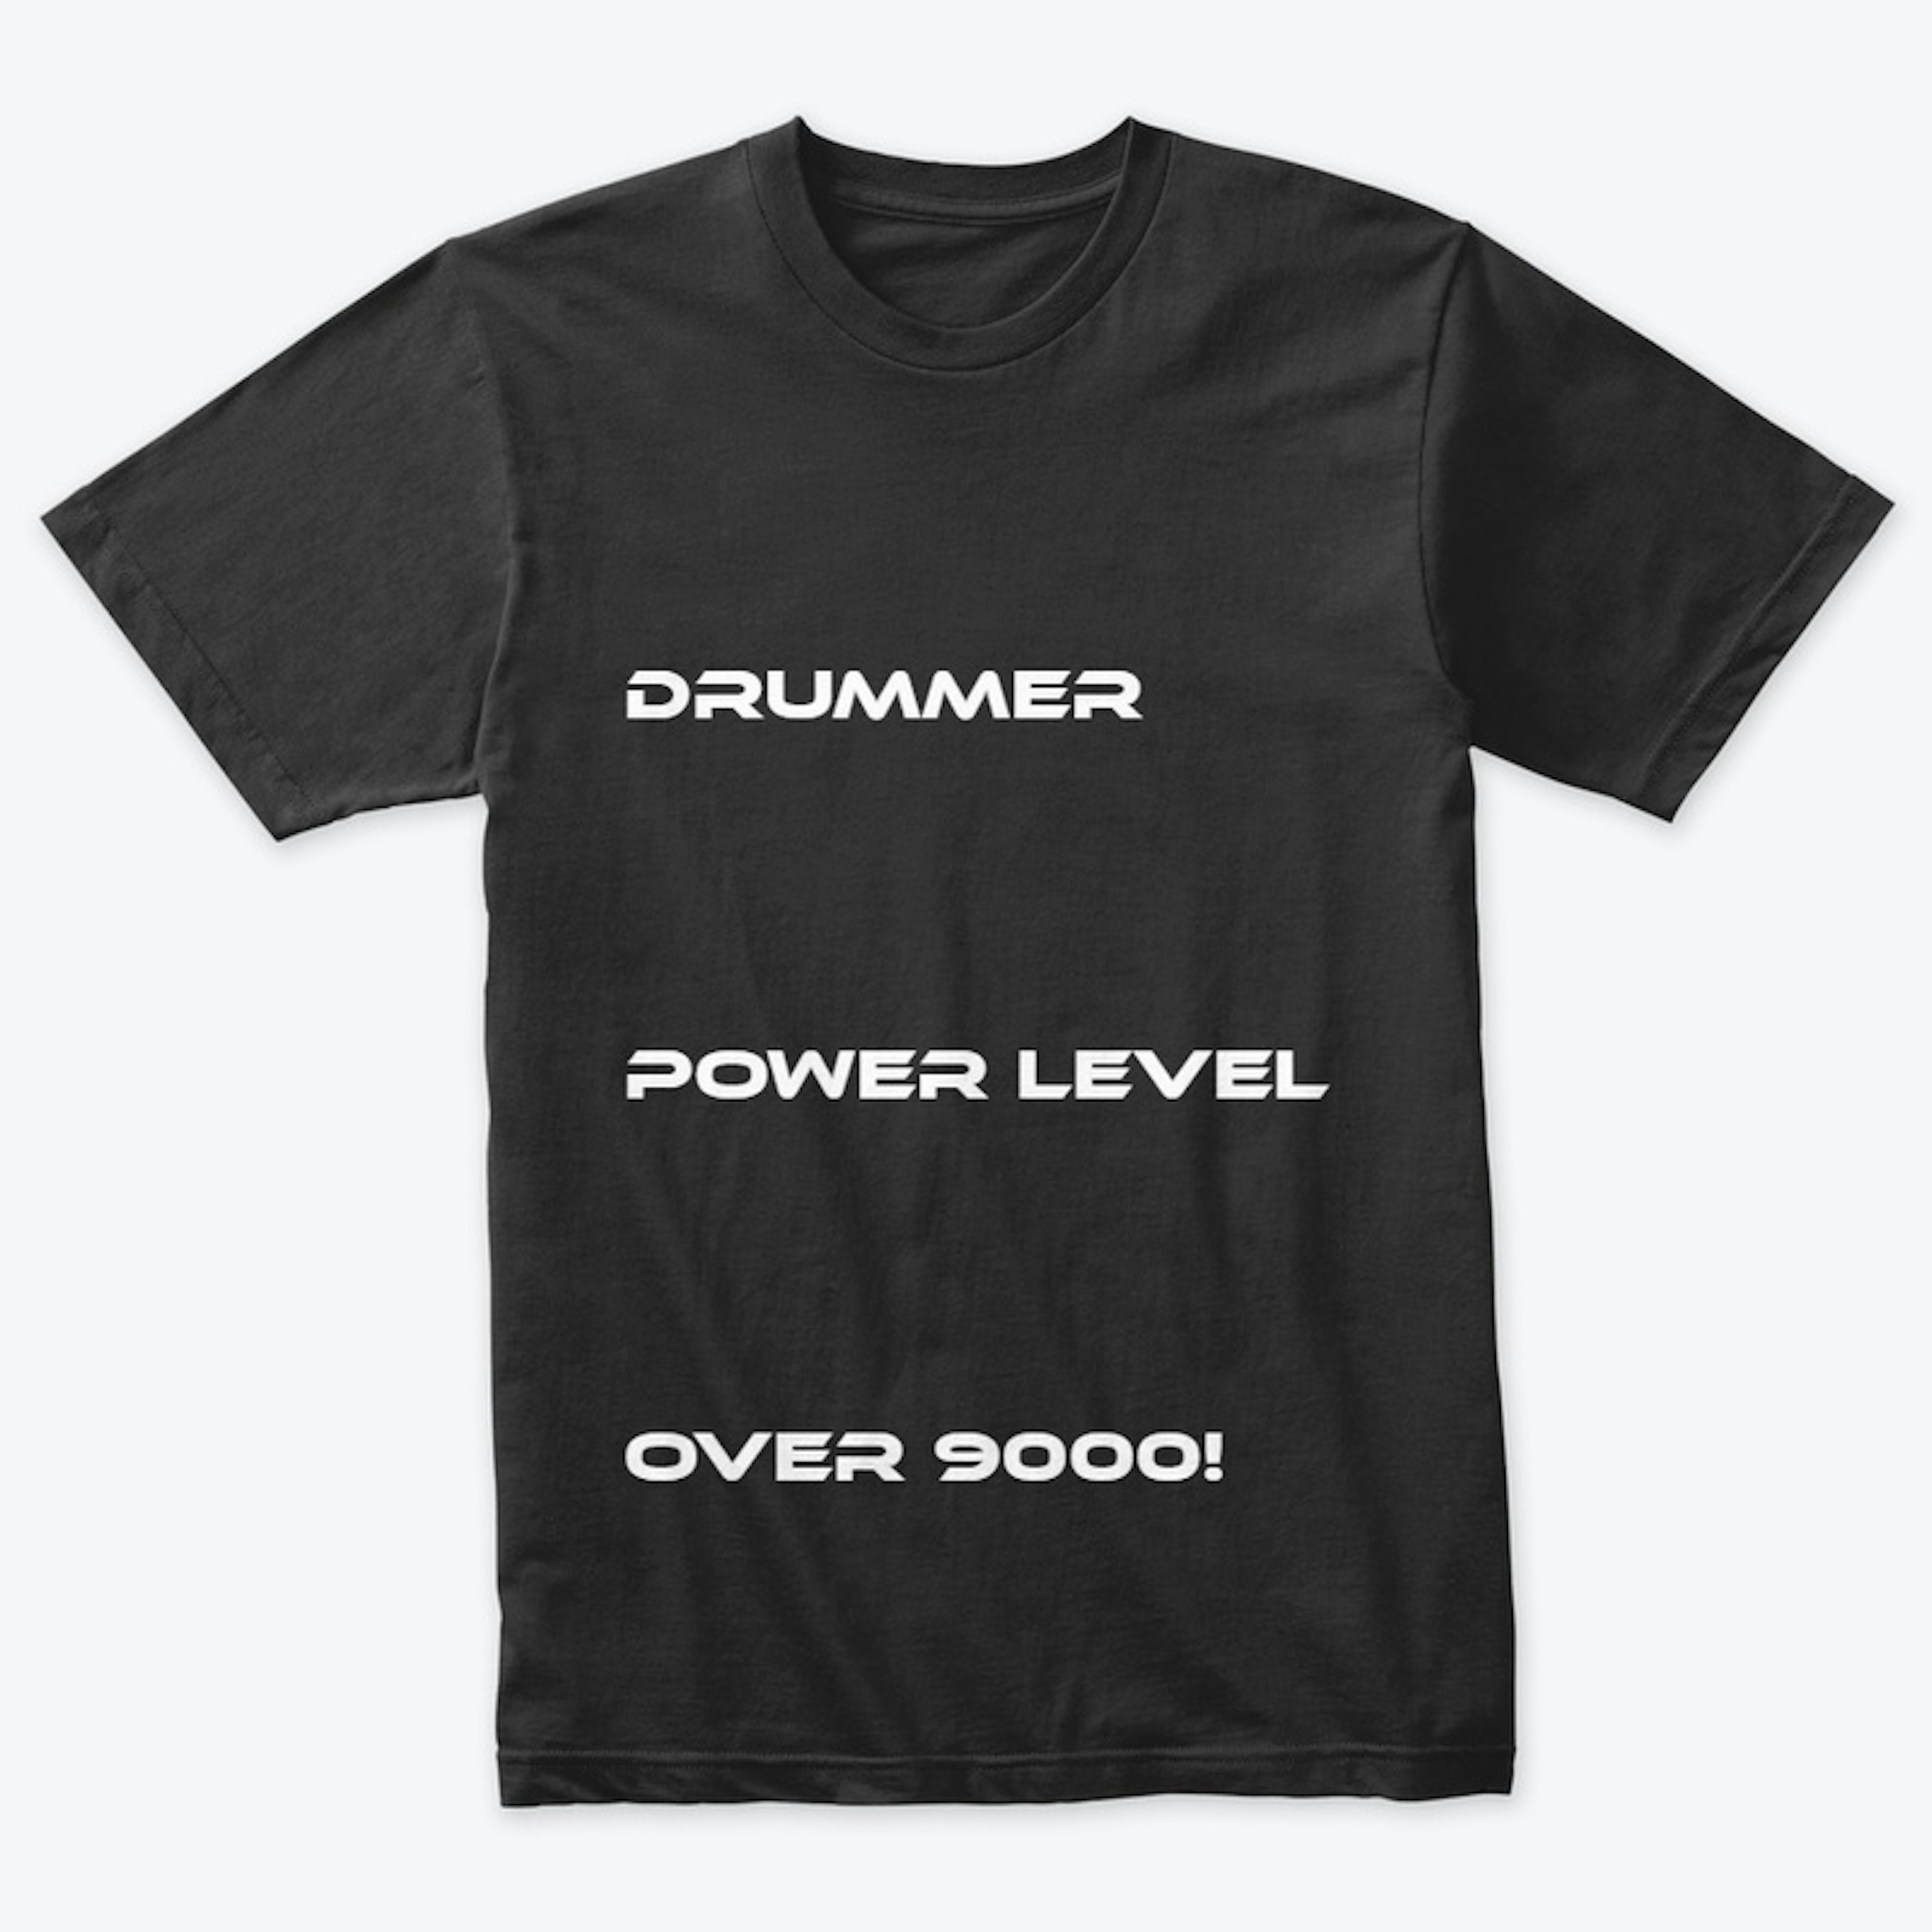 Drummer power level over 9000